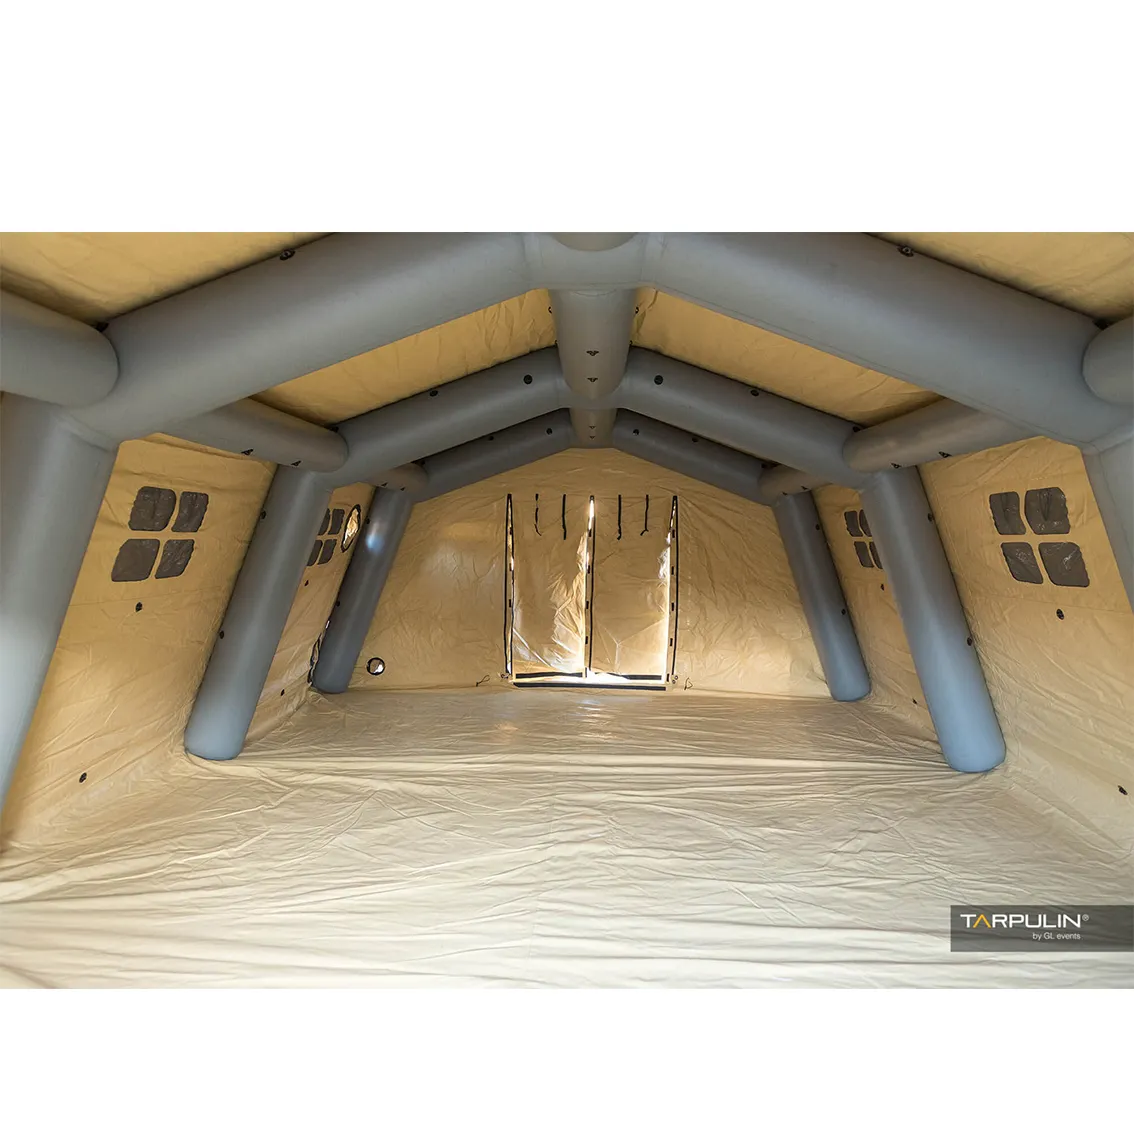 5*6m arabie saoudite fournisseurs tente d'air camping gonflable randonnée en plein air tente en toile tente gonflable étanche